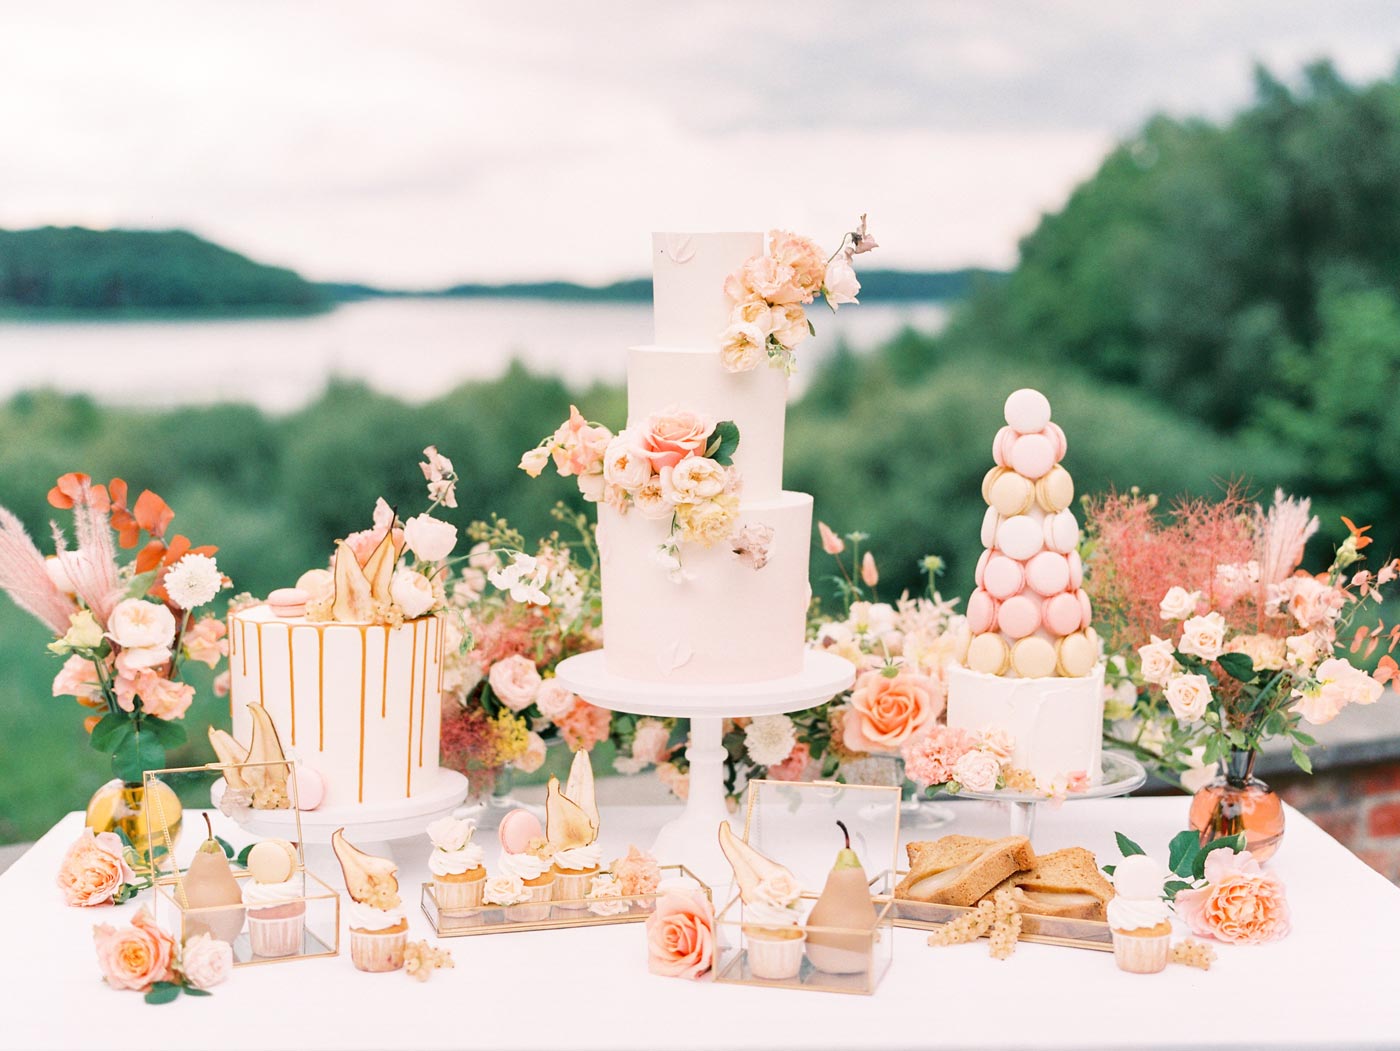 Sweet Table mit Hochzeitstorte mit Macarons, Süßigkeiten und Cupcakes, geschmückt mit Rosen & Birnen, Styled Shooting